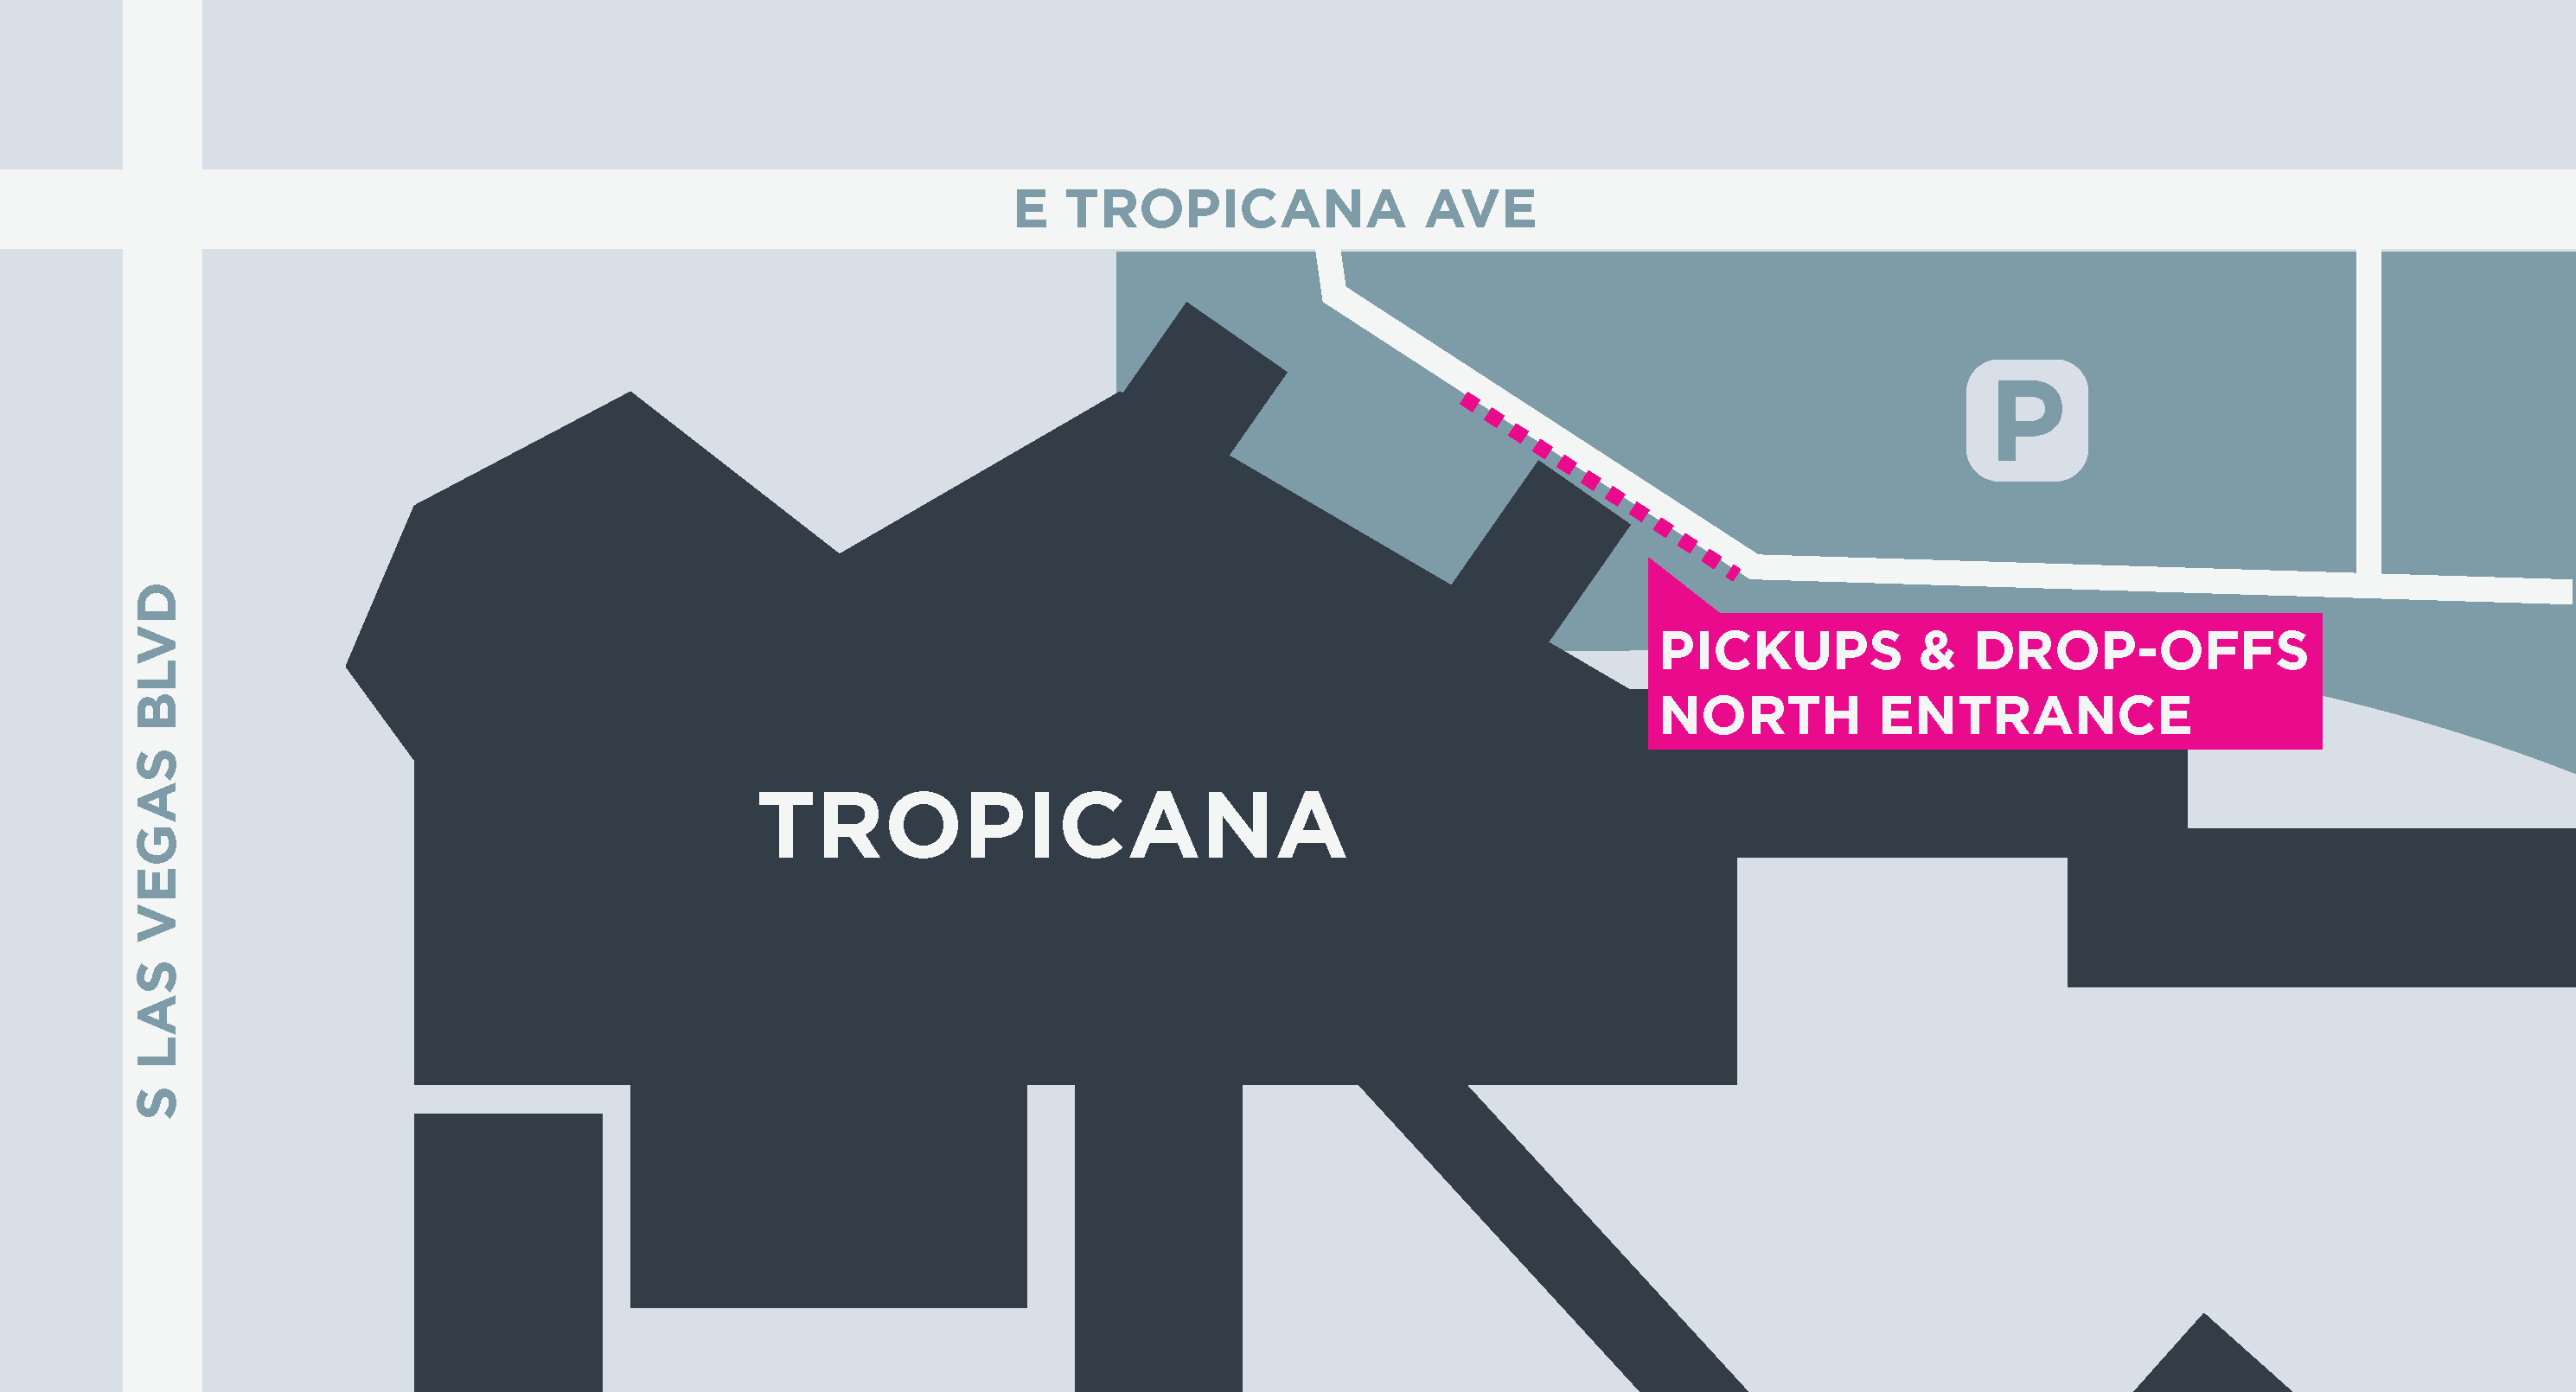 Cette image montre un plan du Tropicana, y compris les zones de départ et d'arrivée.